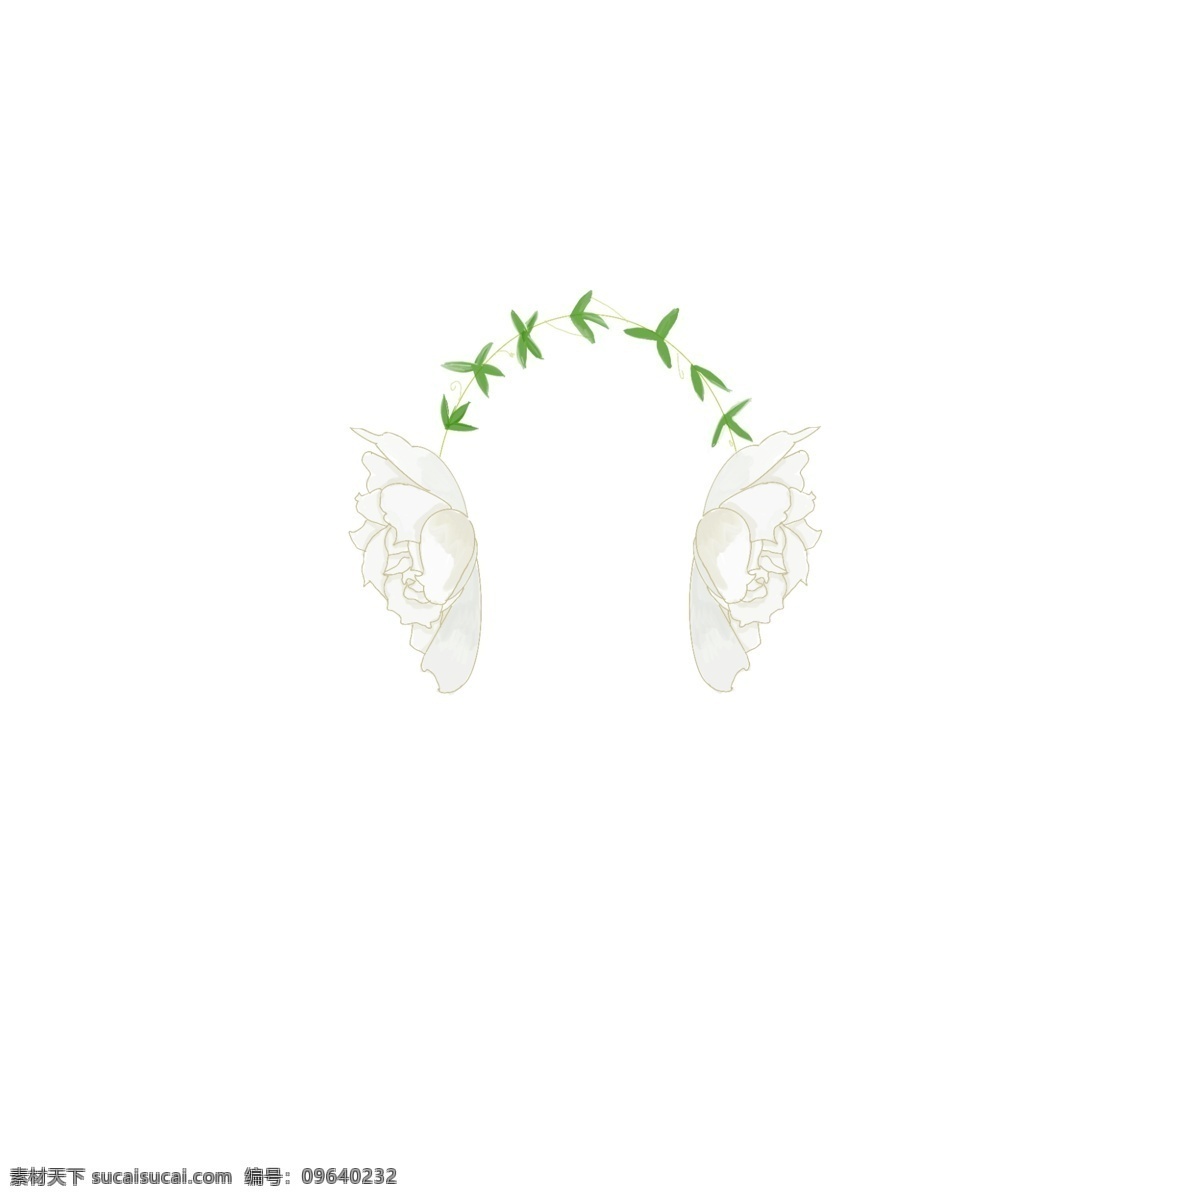 栀子花 耳机 花环 植物 清新 浪漫 文艺 手绘 创意